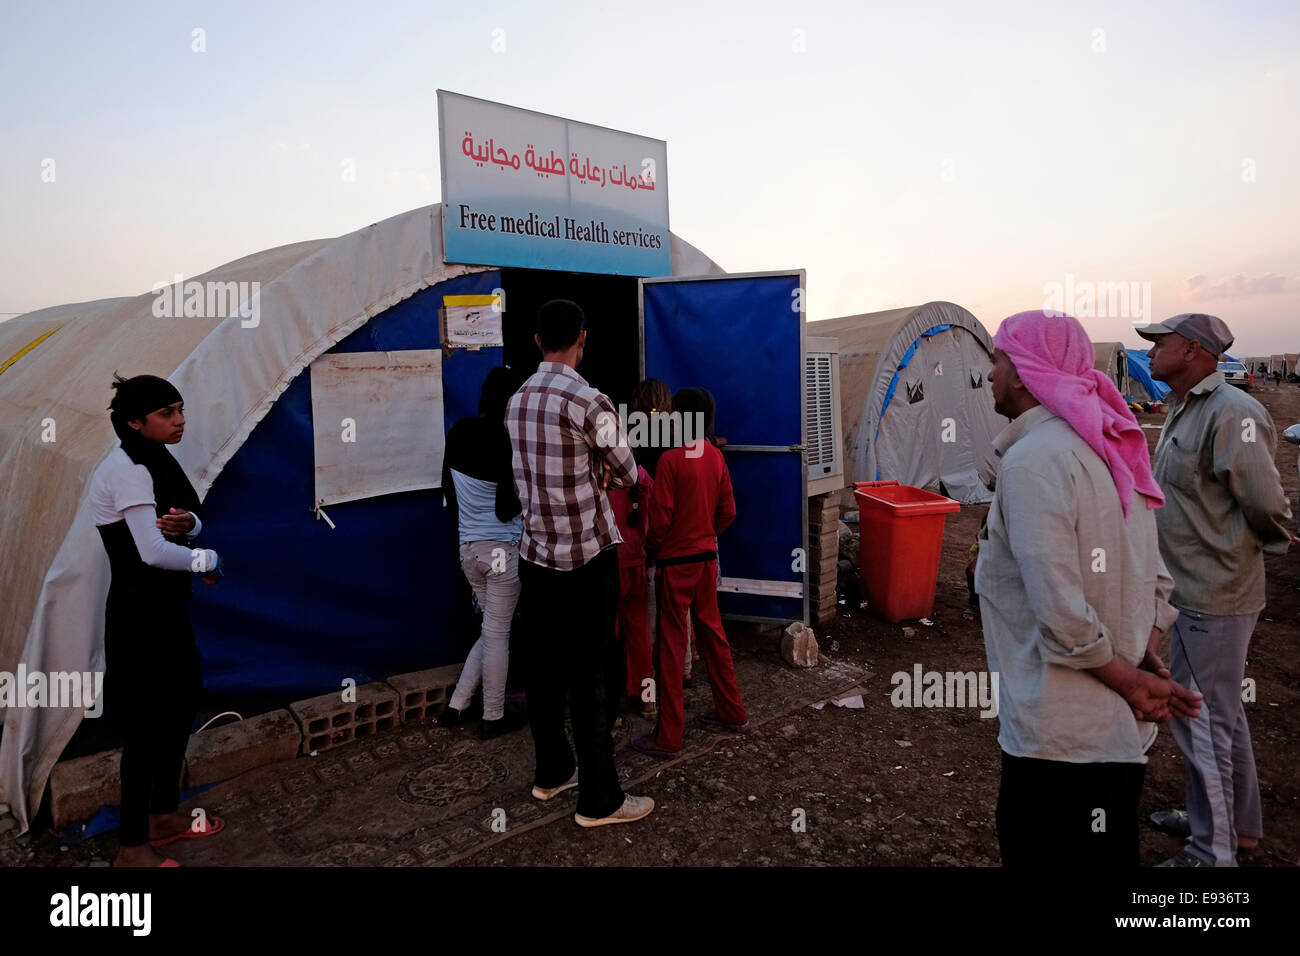 Yazidi di persone in coda per entrare in un mobile di clinica medica in Nawroz Refugee Camp che è stata inizialmente istituita per shelter Aramei spostato dall'attuale siria guerra civile poi occupata dagli sfollati dalla minoranza setta Yazidi, che fuggono dalla violenza nella città irachena di Sinjar situato vicino alla città di al-Malikyah in Rojava autonoma curda, regione nord-orientale della Siria. Foto Stock